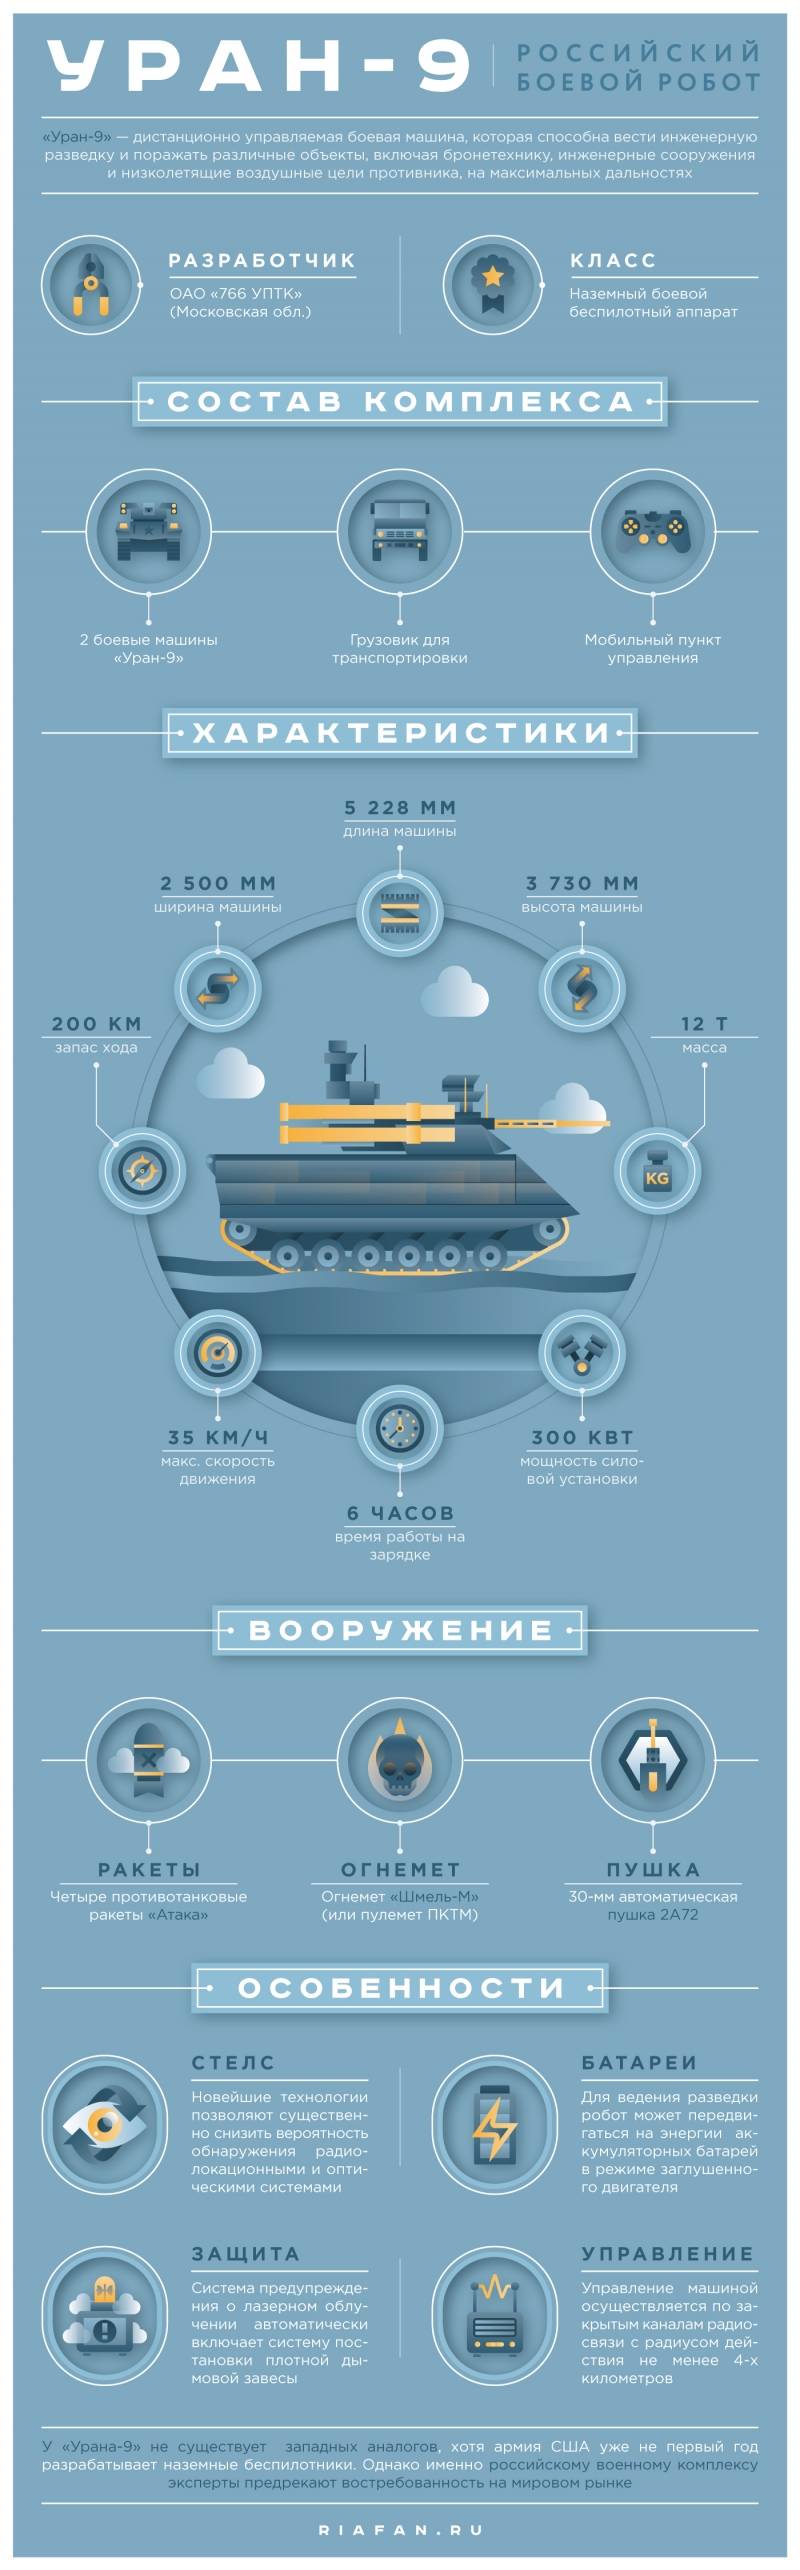 Боевой робототехнический комплекс «Уран-9». Инфографика